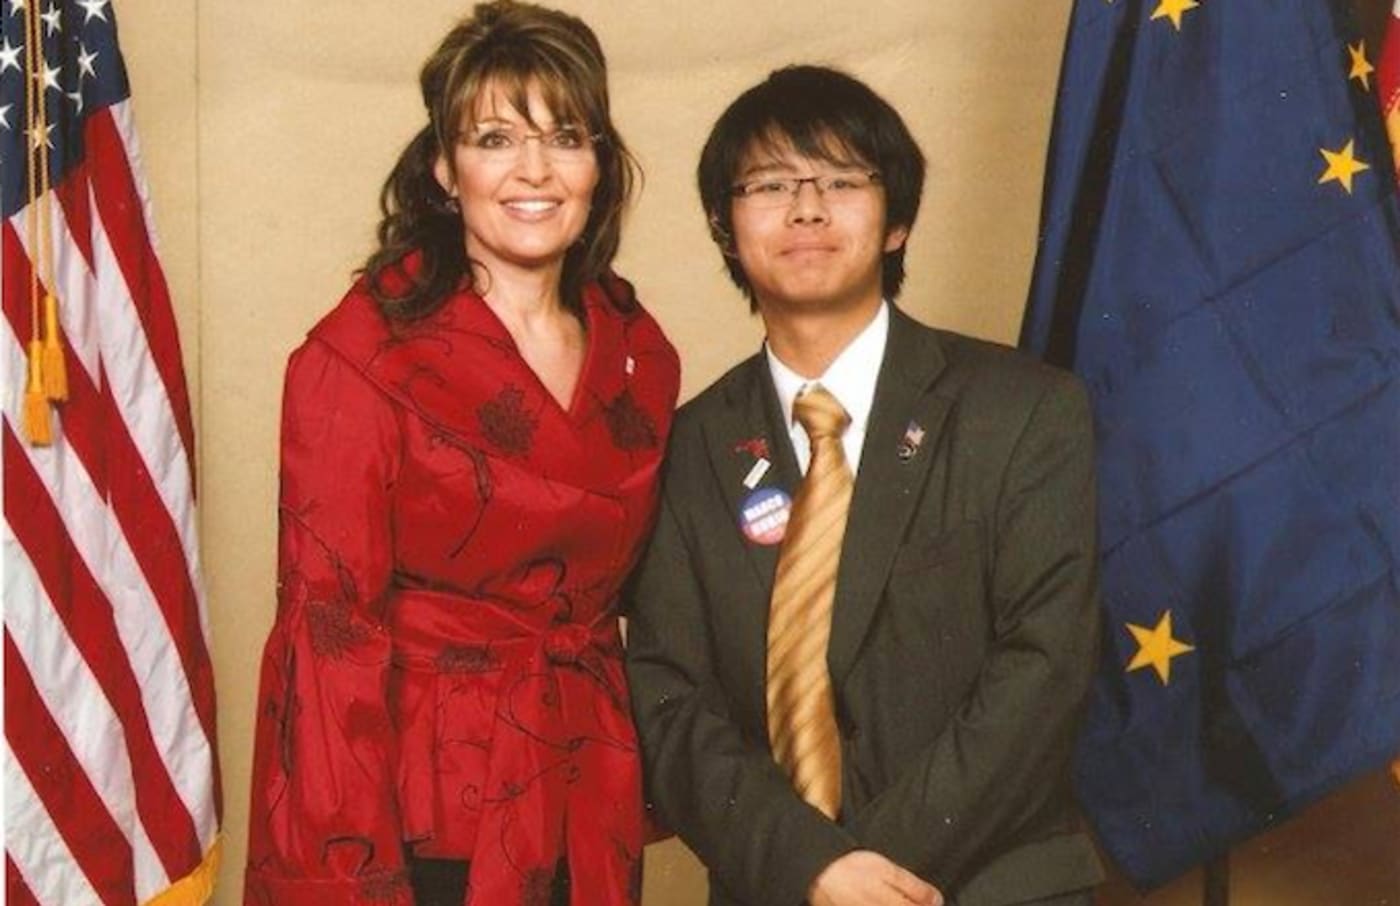 Harry Tsang with Sarah Palin. Image via Harry Tsang